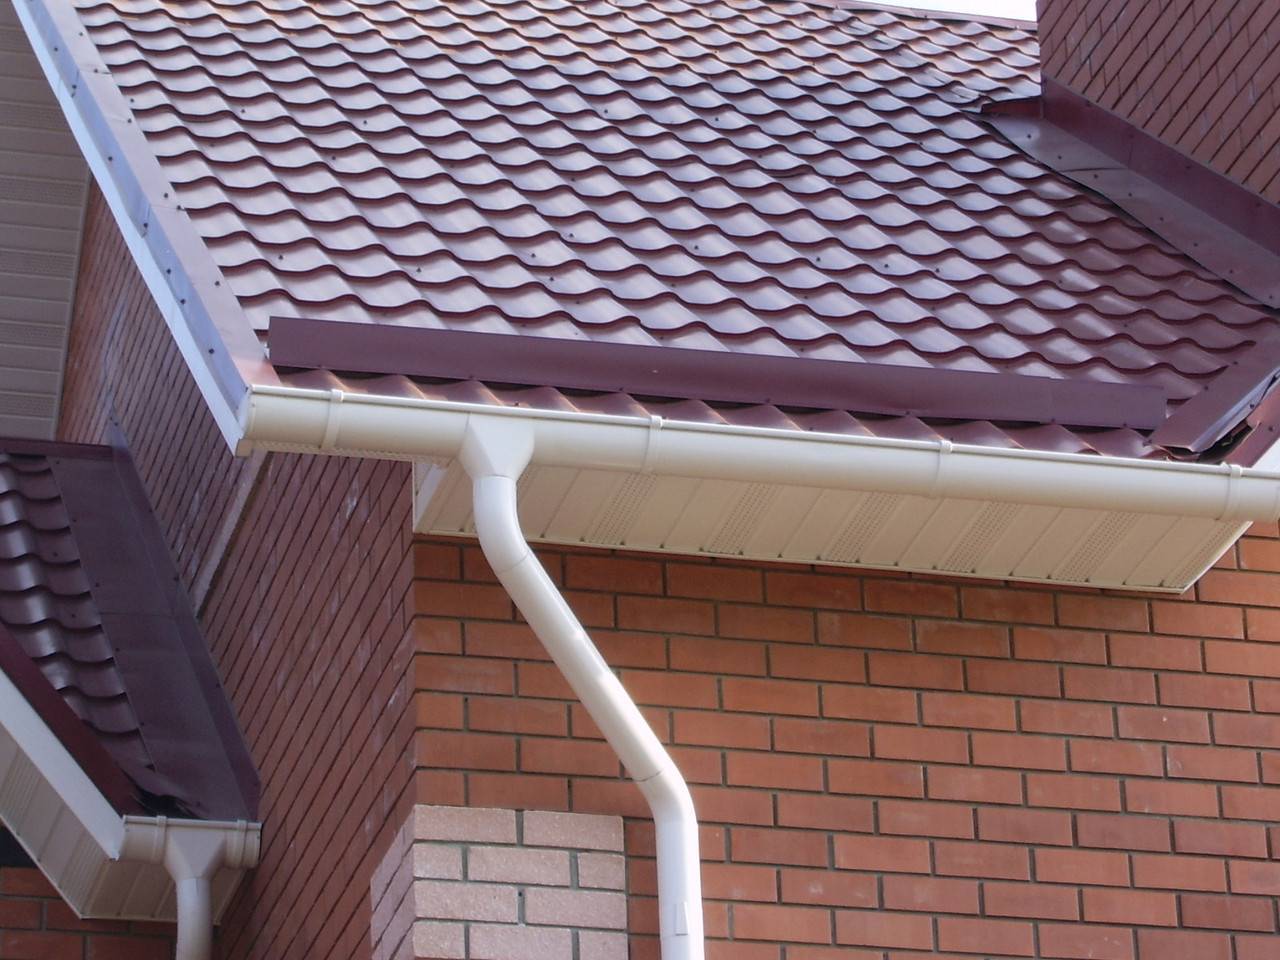 Пластиковые водостоки для крыши: устройство и монтаж своими руками, размеры желоба и что лучше - пластик или металл